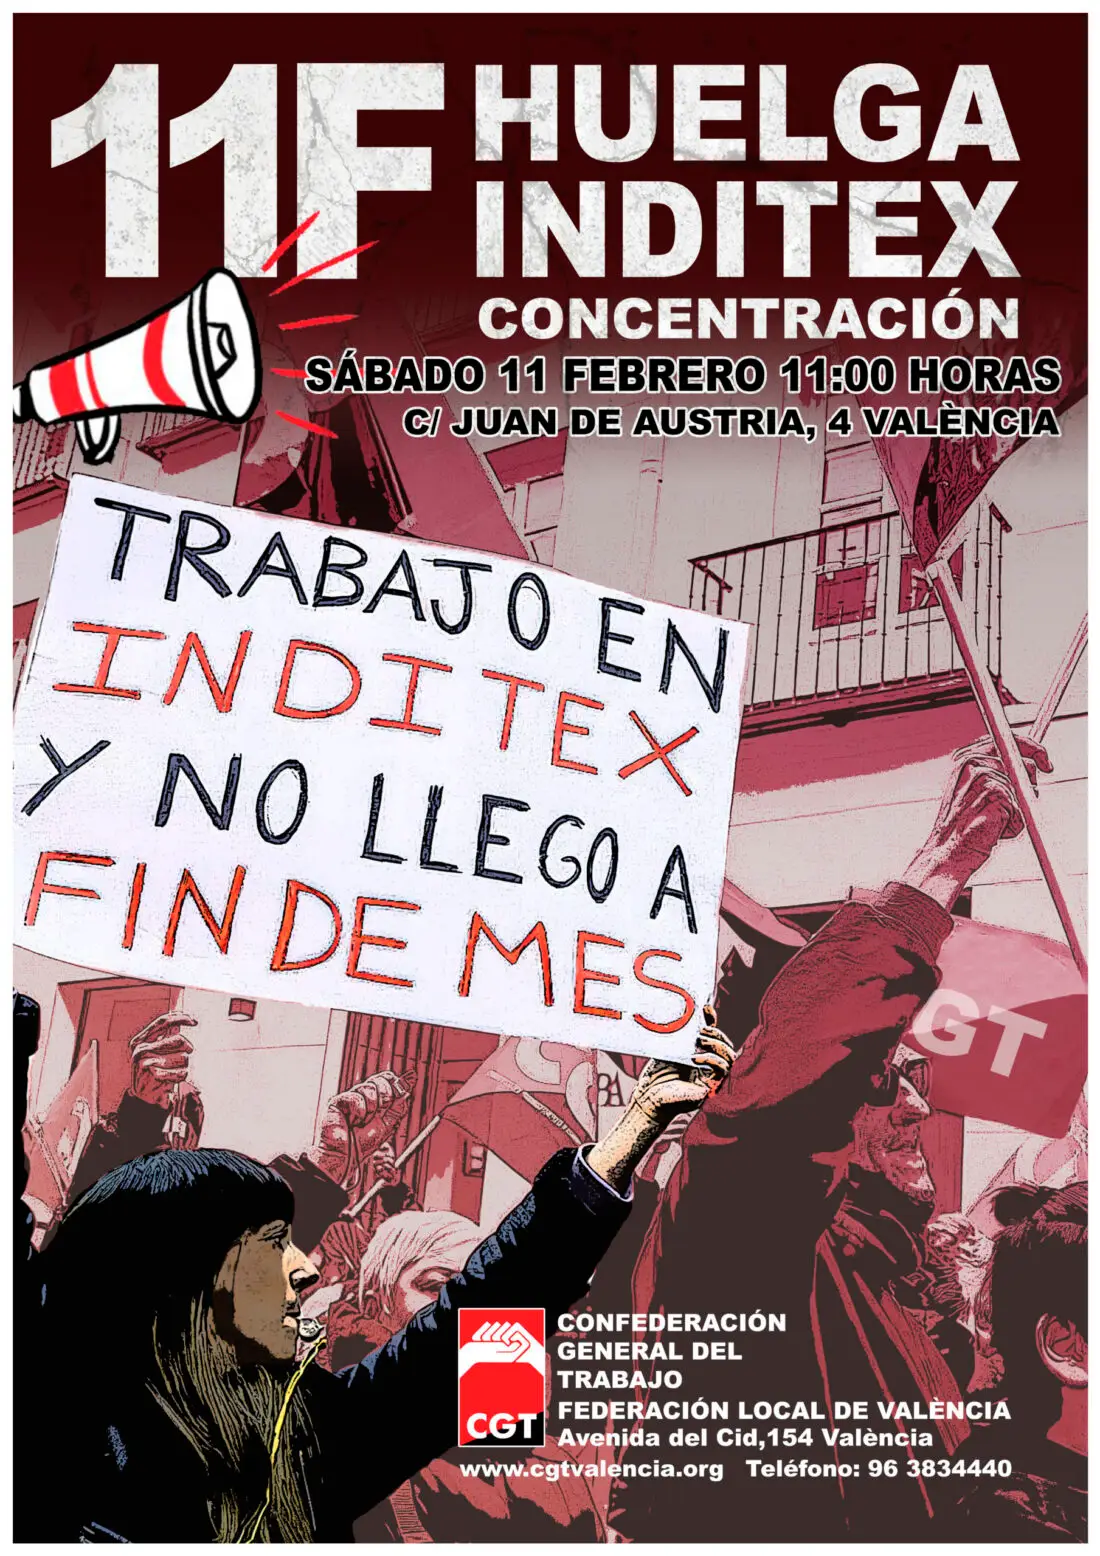 Este sábado 11 de febrero las trabajadoras de tienda de la multinacional Inditex están llamadas a la huelga